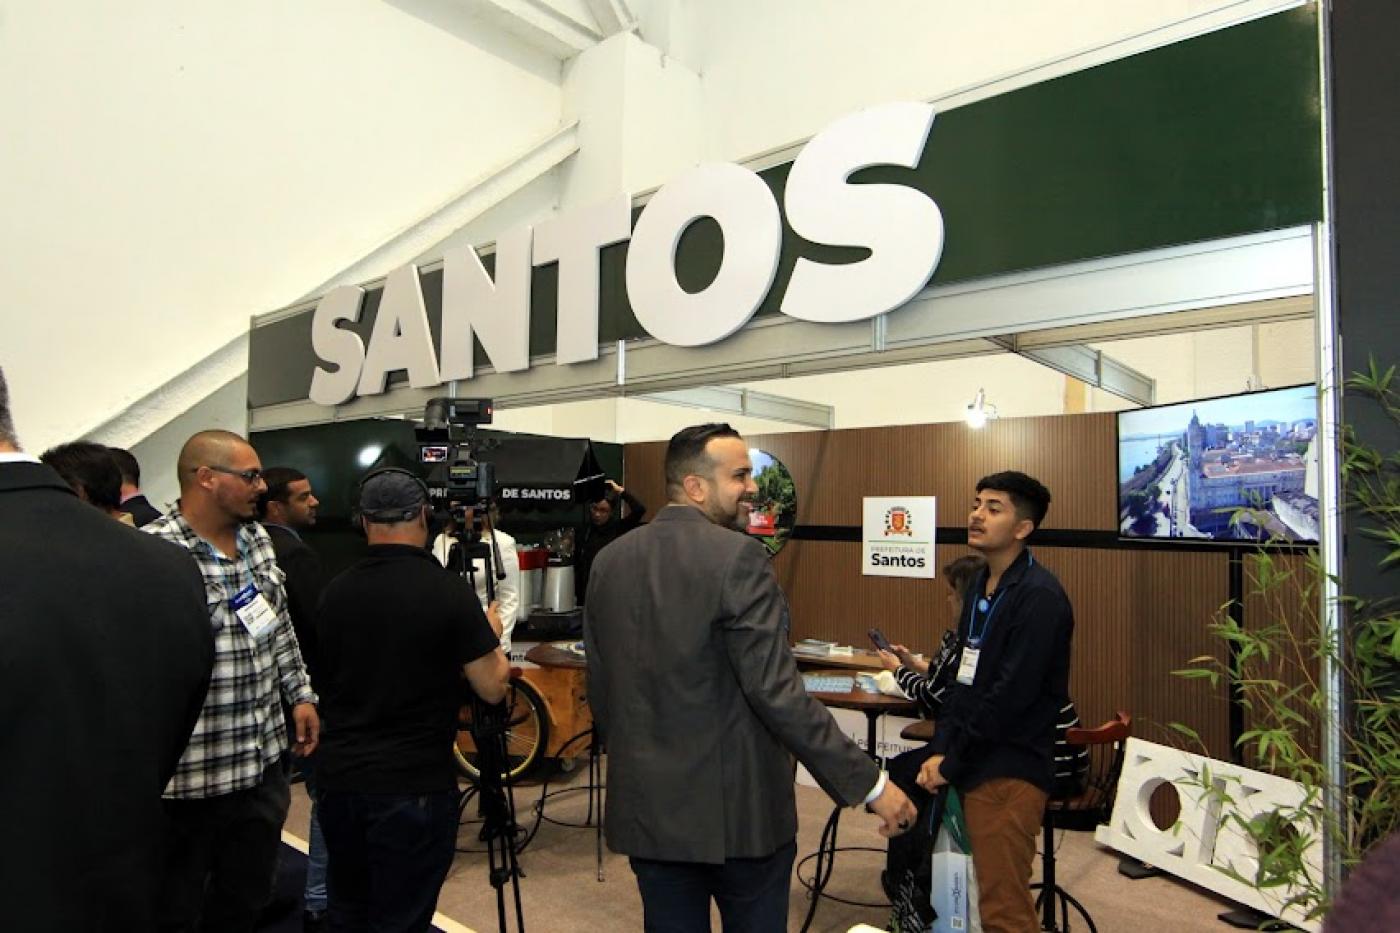 Estande com o letreiro escrito Santos em destaque é visitado por gestores e investidores. #pratodosverem